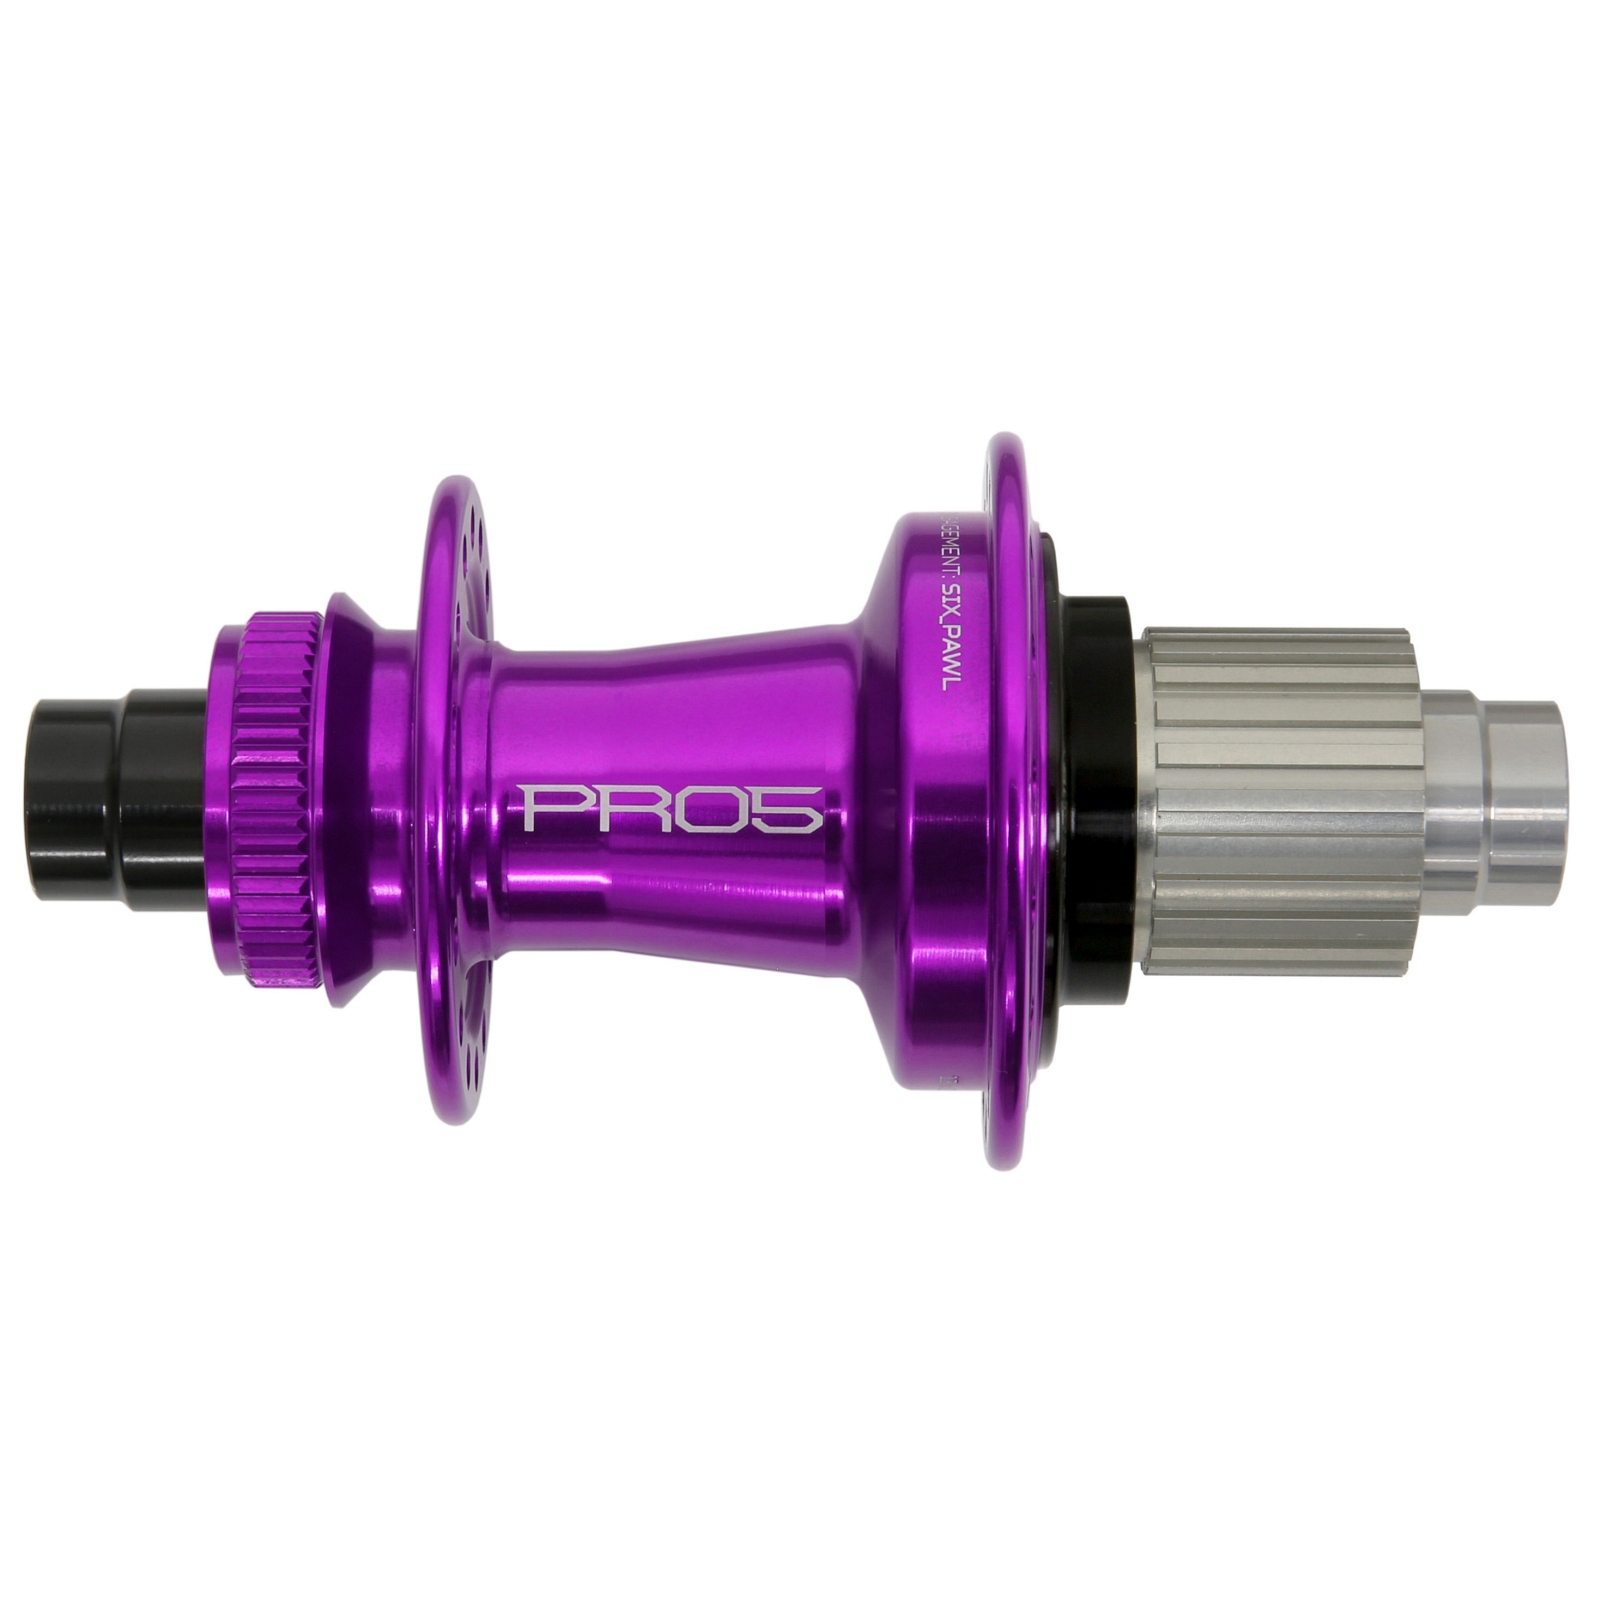 Productfoto van Hope Pro 5 Achterwielnaaf - Centerlock - 12x142mm | Shimano Micro Spline - paars